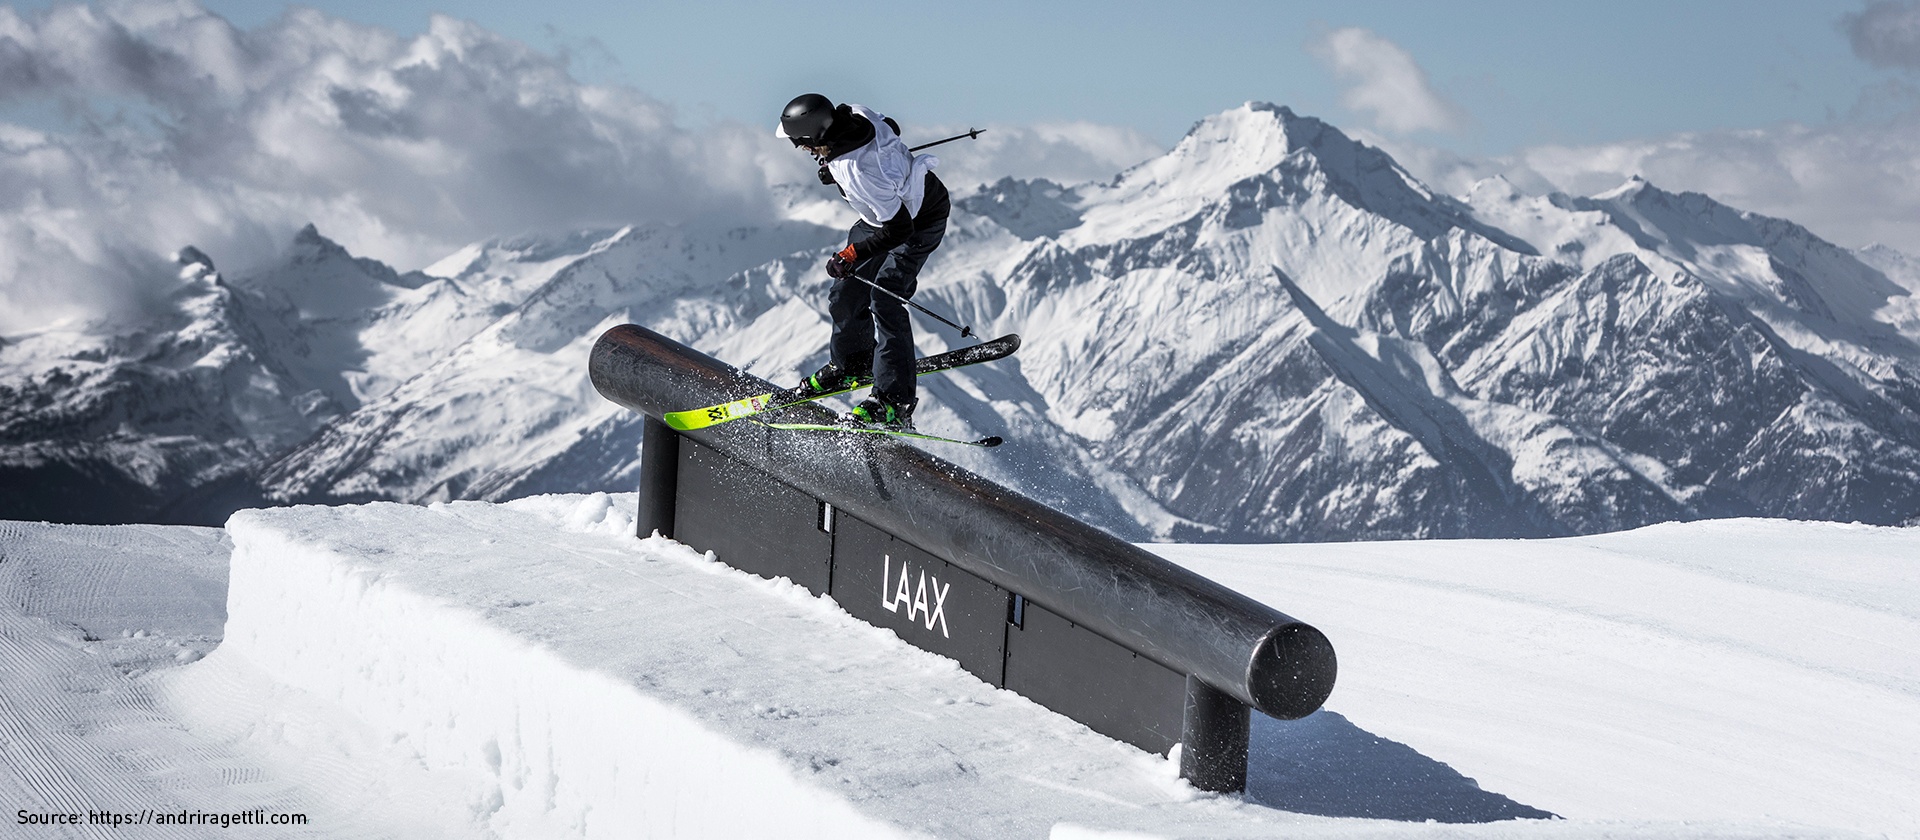 Banner image of Andri Ragettli snowboarding